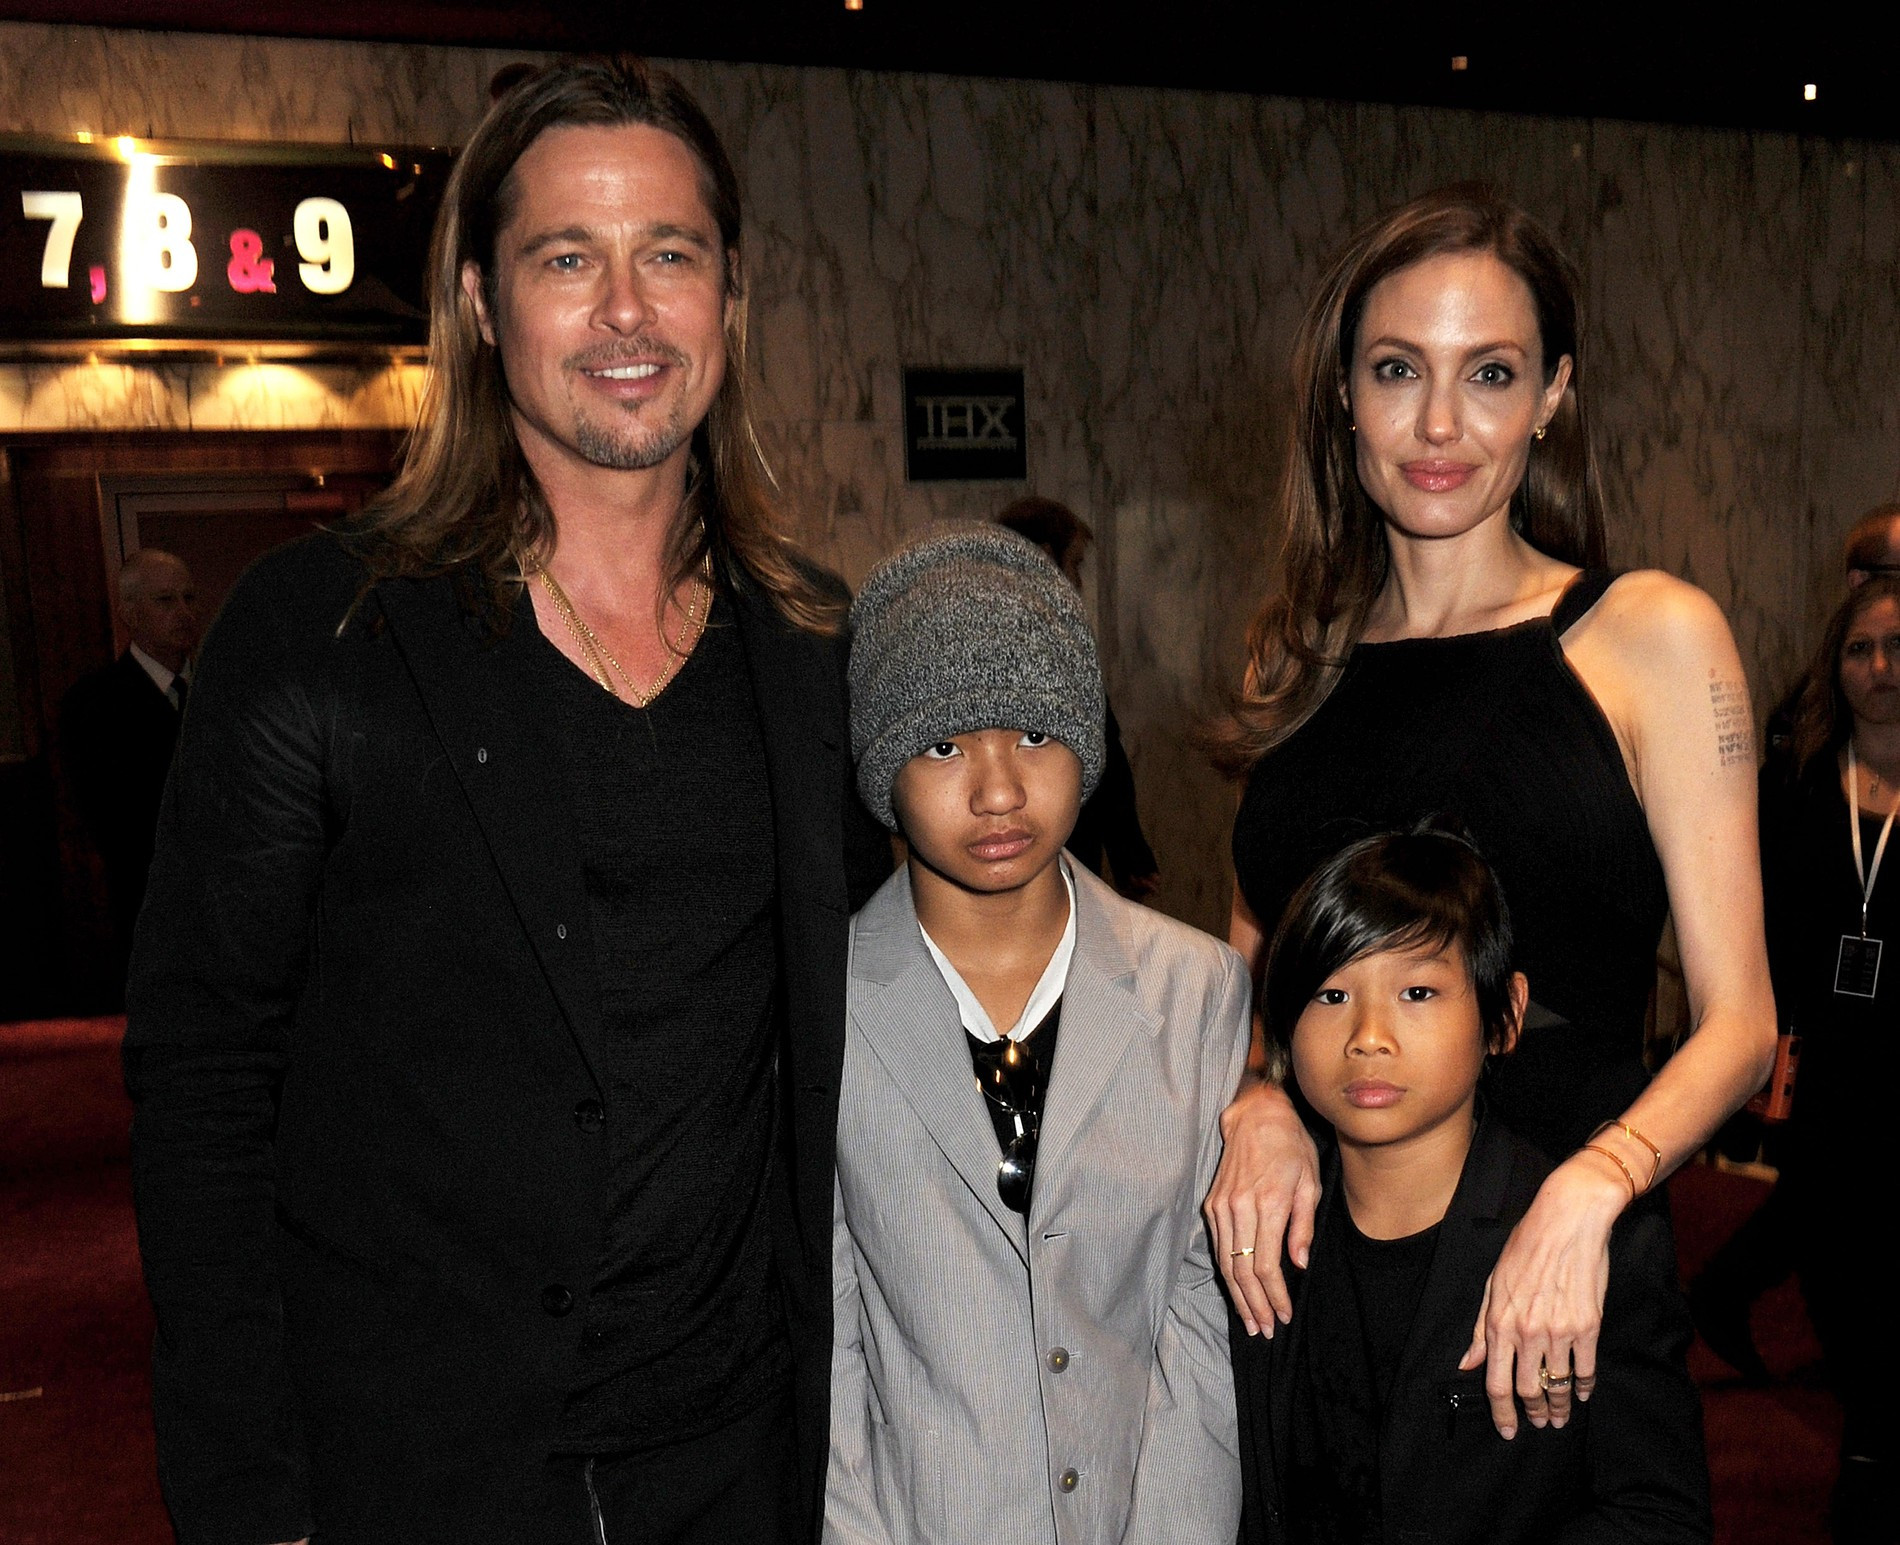 Брэд Питт и Анджелина Джоли c детьми
Фото: Getty Images